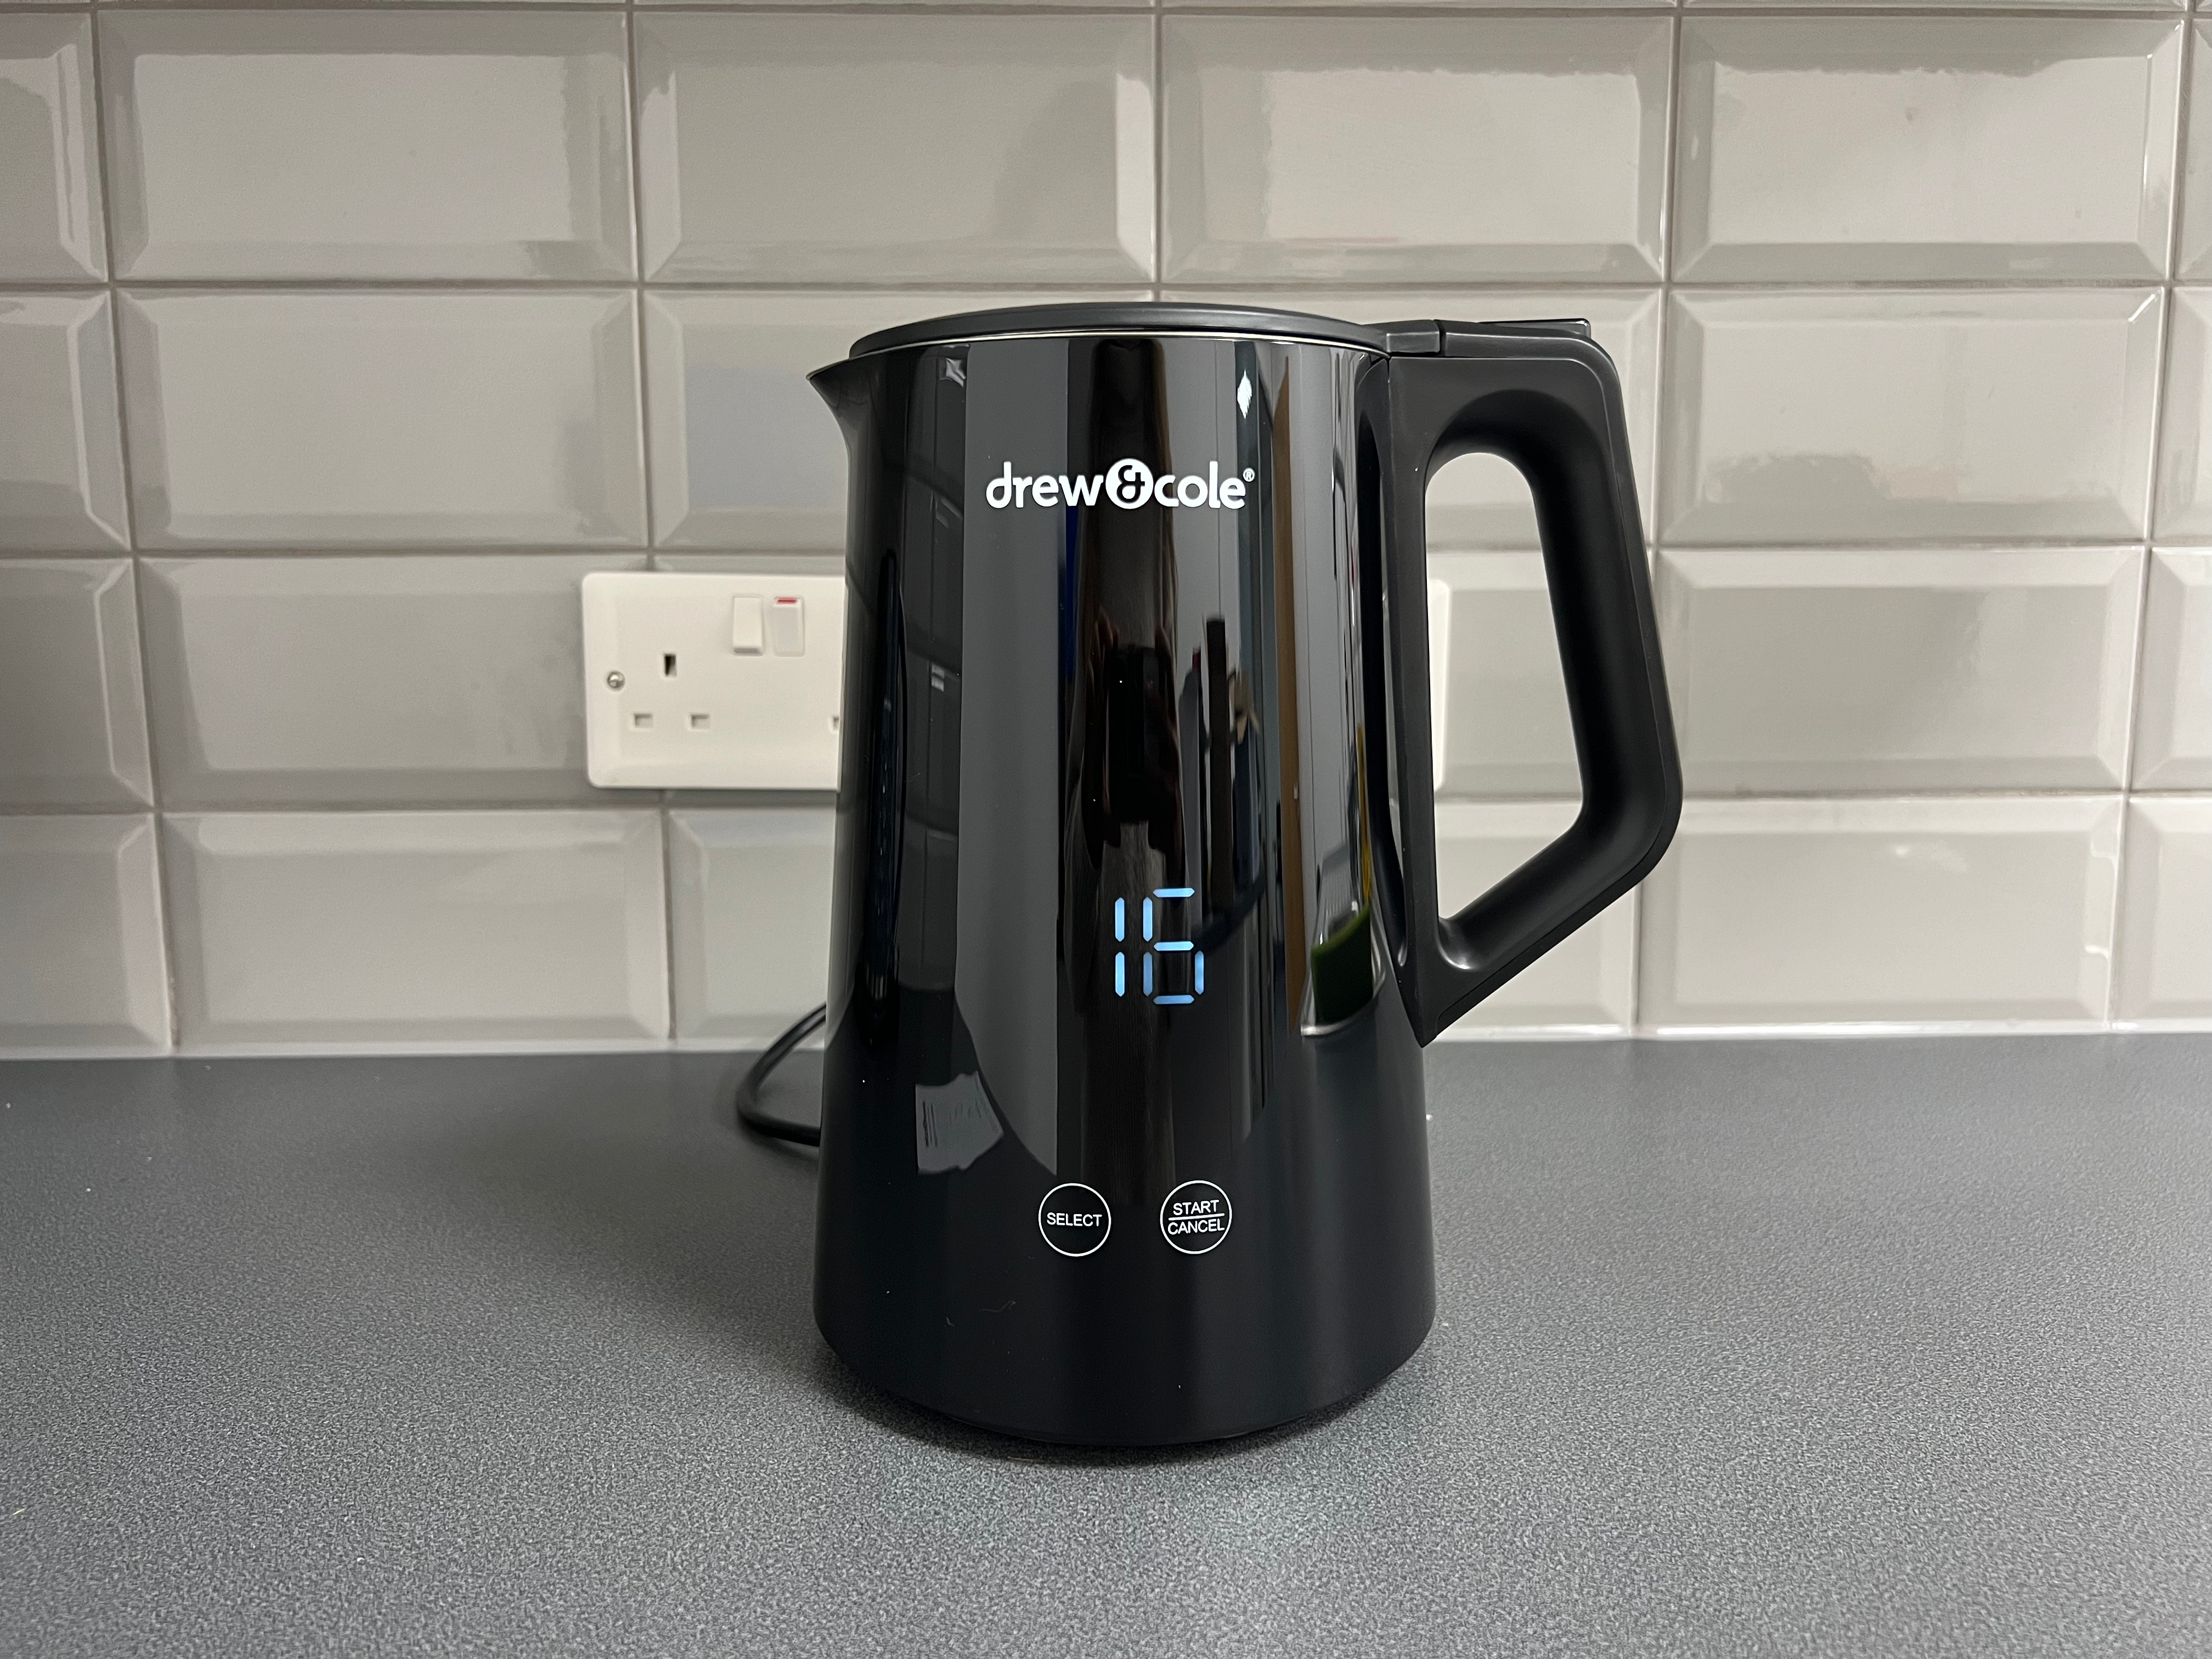 Drew & Cole digital pro 01570 jug kettle